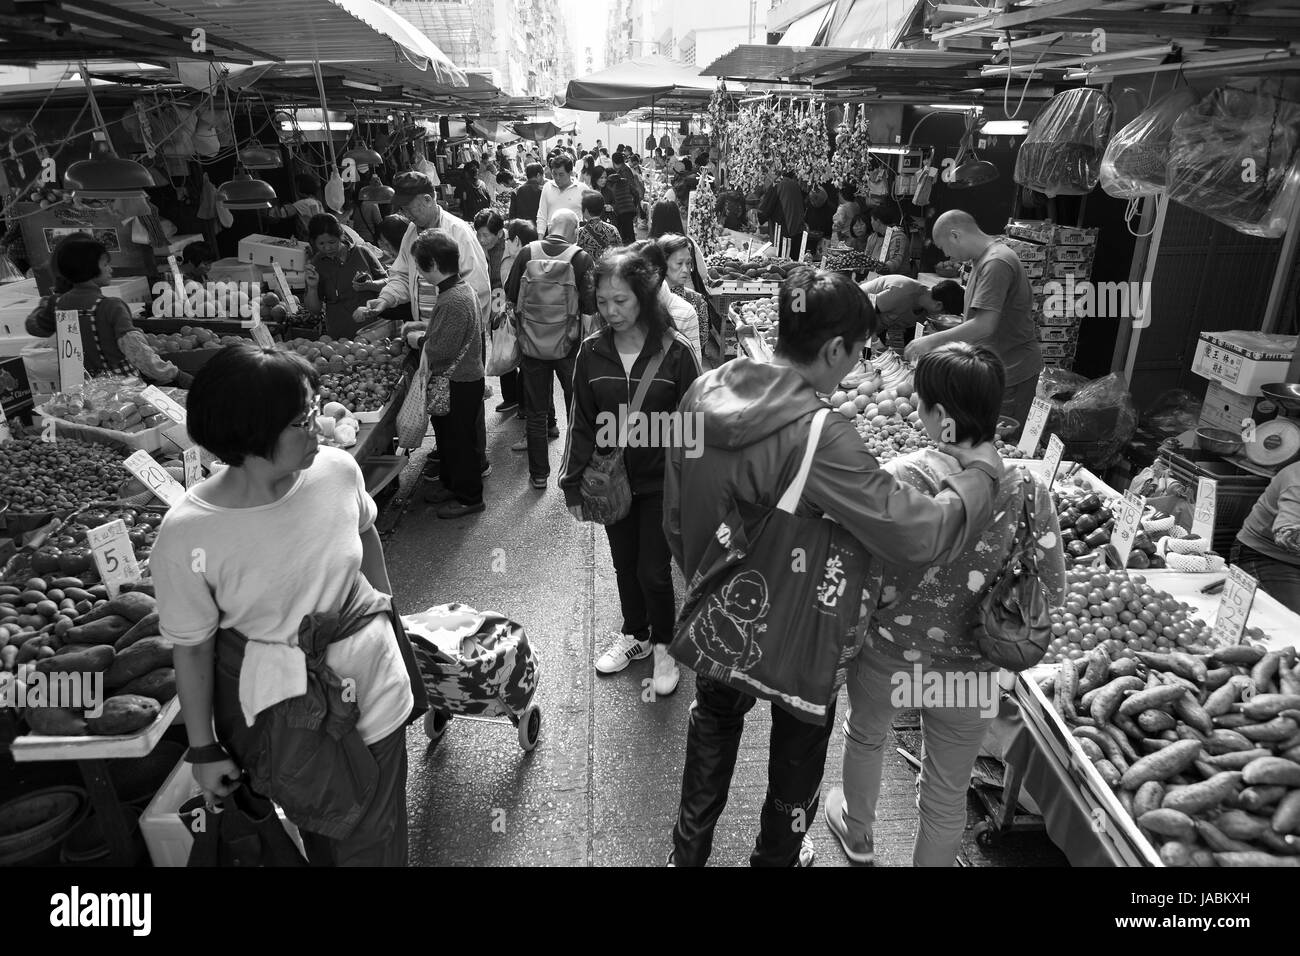 Wet Market in Hong Kong (schwarz und weiß) Stockfoto